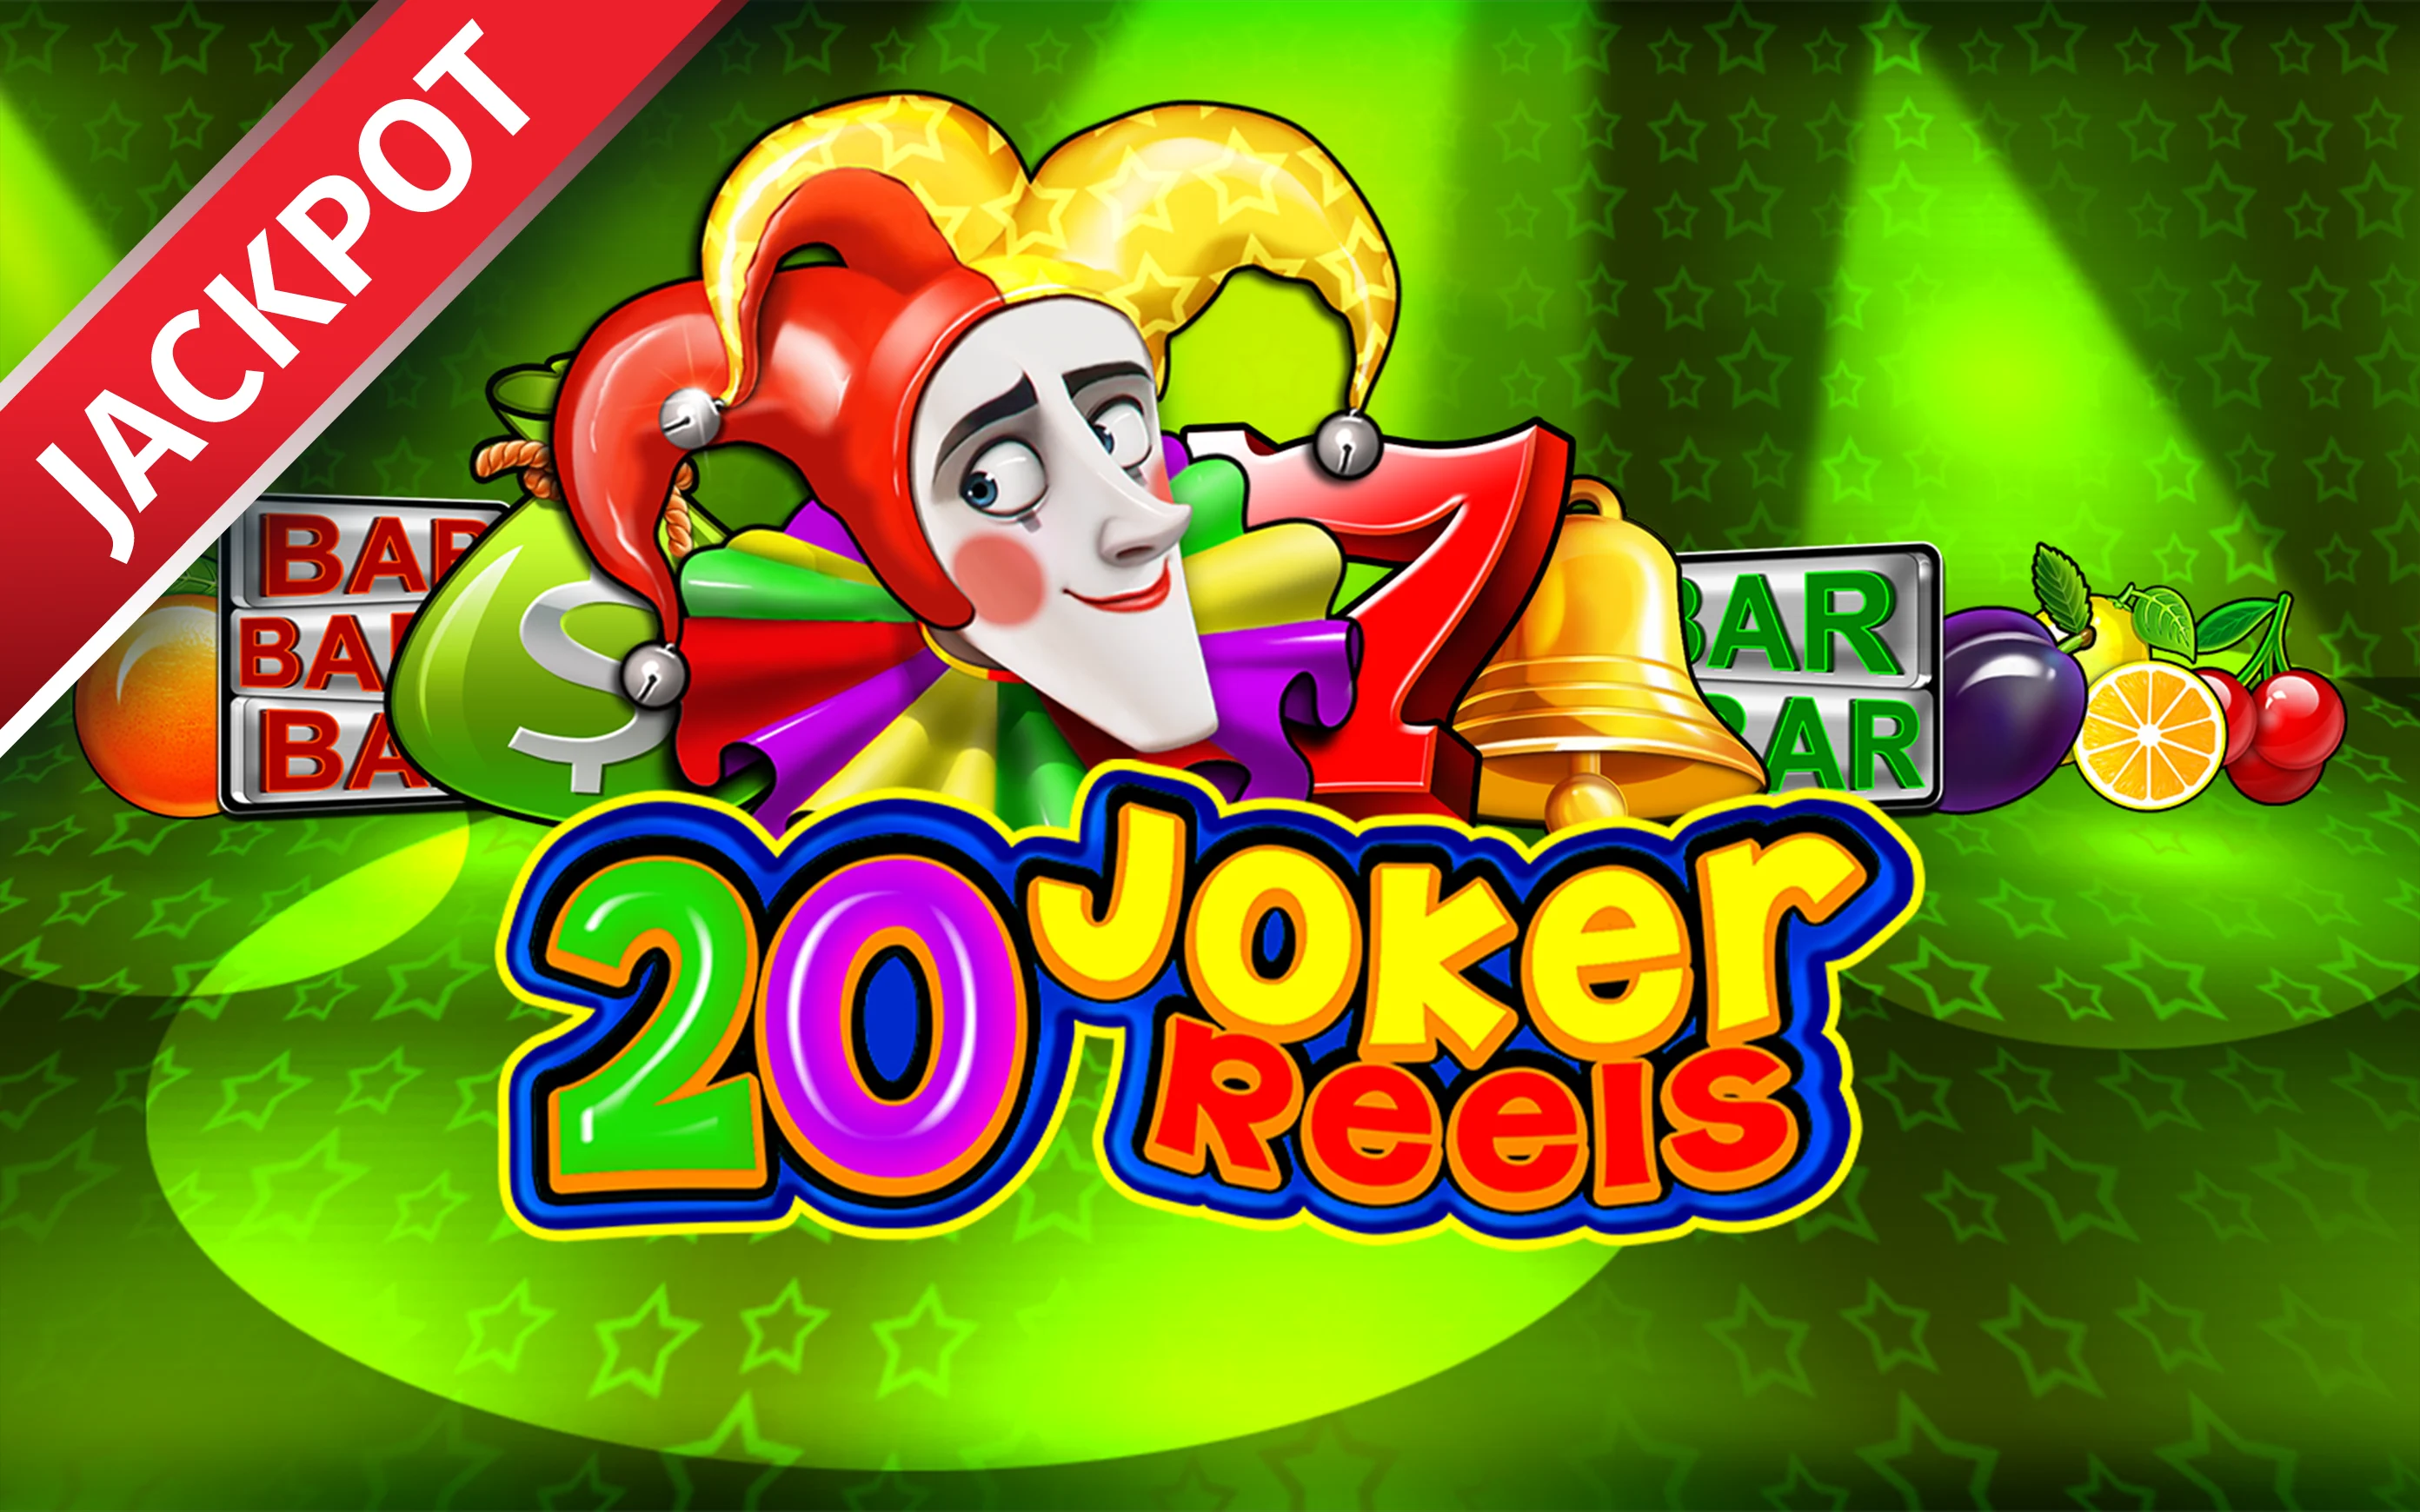 Παίξτε 20 Joker Reels στο online καζίνο Starcasino.be